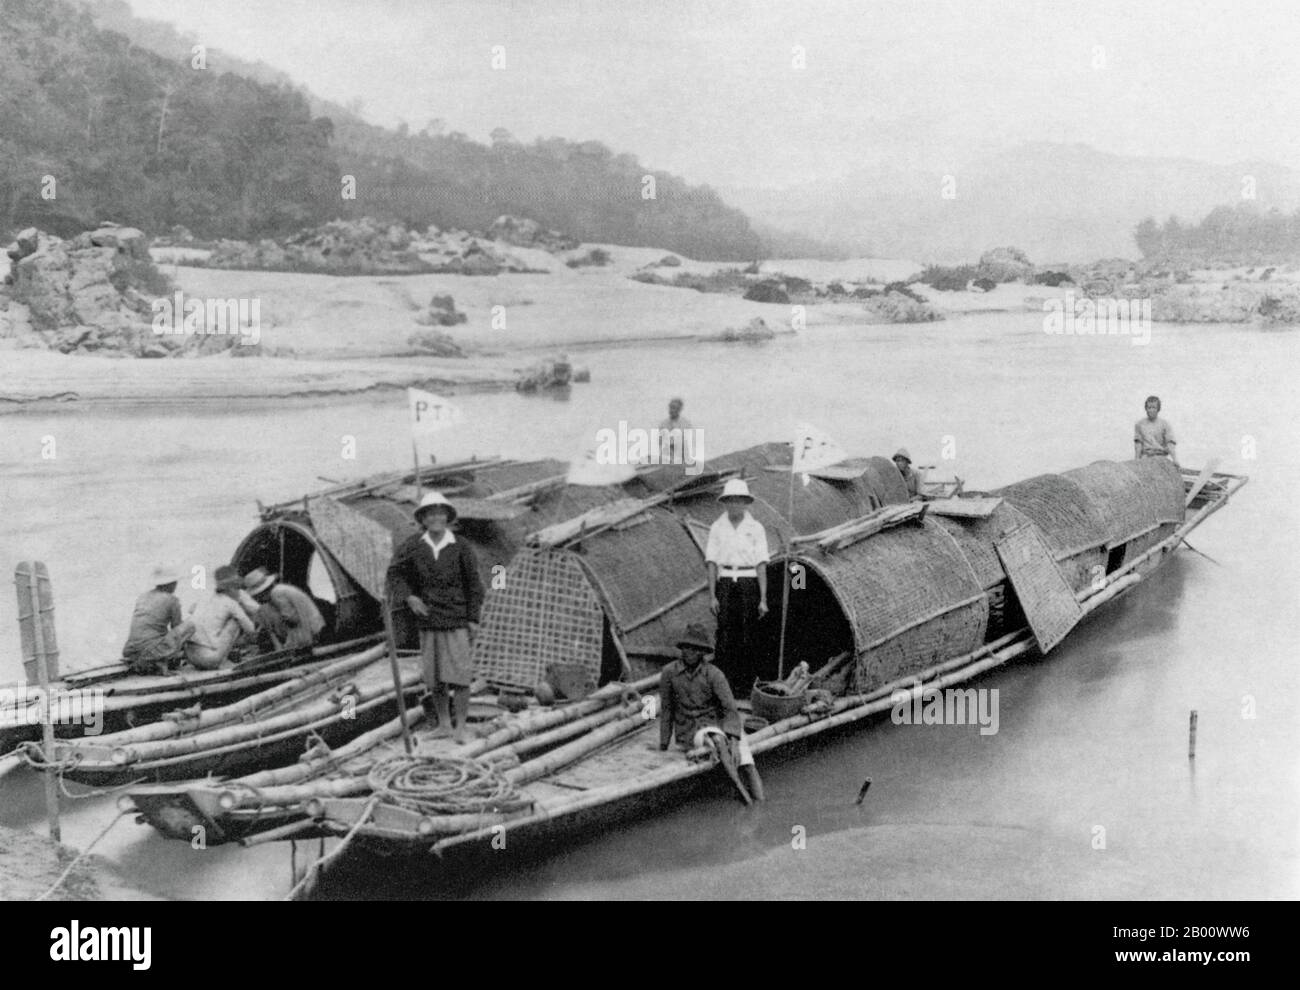 Laos : livraison du courrier sur le Mékong par le service Post & Telegraph dans le nord du Laos en 1919. Le Mékong est le 12e fleuve le plus long du monde. Depuis sa source himalayenne sur le plateau tibétain, il coule environ 4,350 km (2,703 miles) à travers la province chinoise du Yunnan, la Birmanie, le Laos, la Thaïlande, le Cambodge et le Vietnam, qui s'écoulent enfin dans la mer de Chine méridionale. La construction récente de barrages hydroélectriques sur la rivière et ses affluents a réduit considérablement le débit d'eau pendant la saison sèche en Asie du Sud-est. Banque D'Images